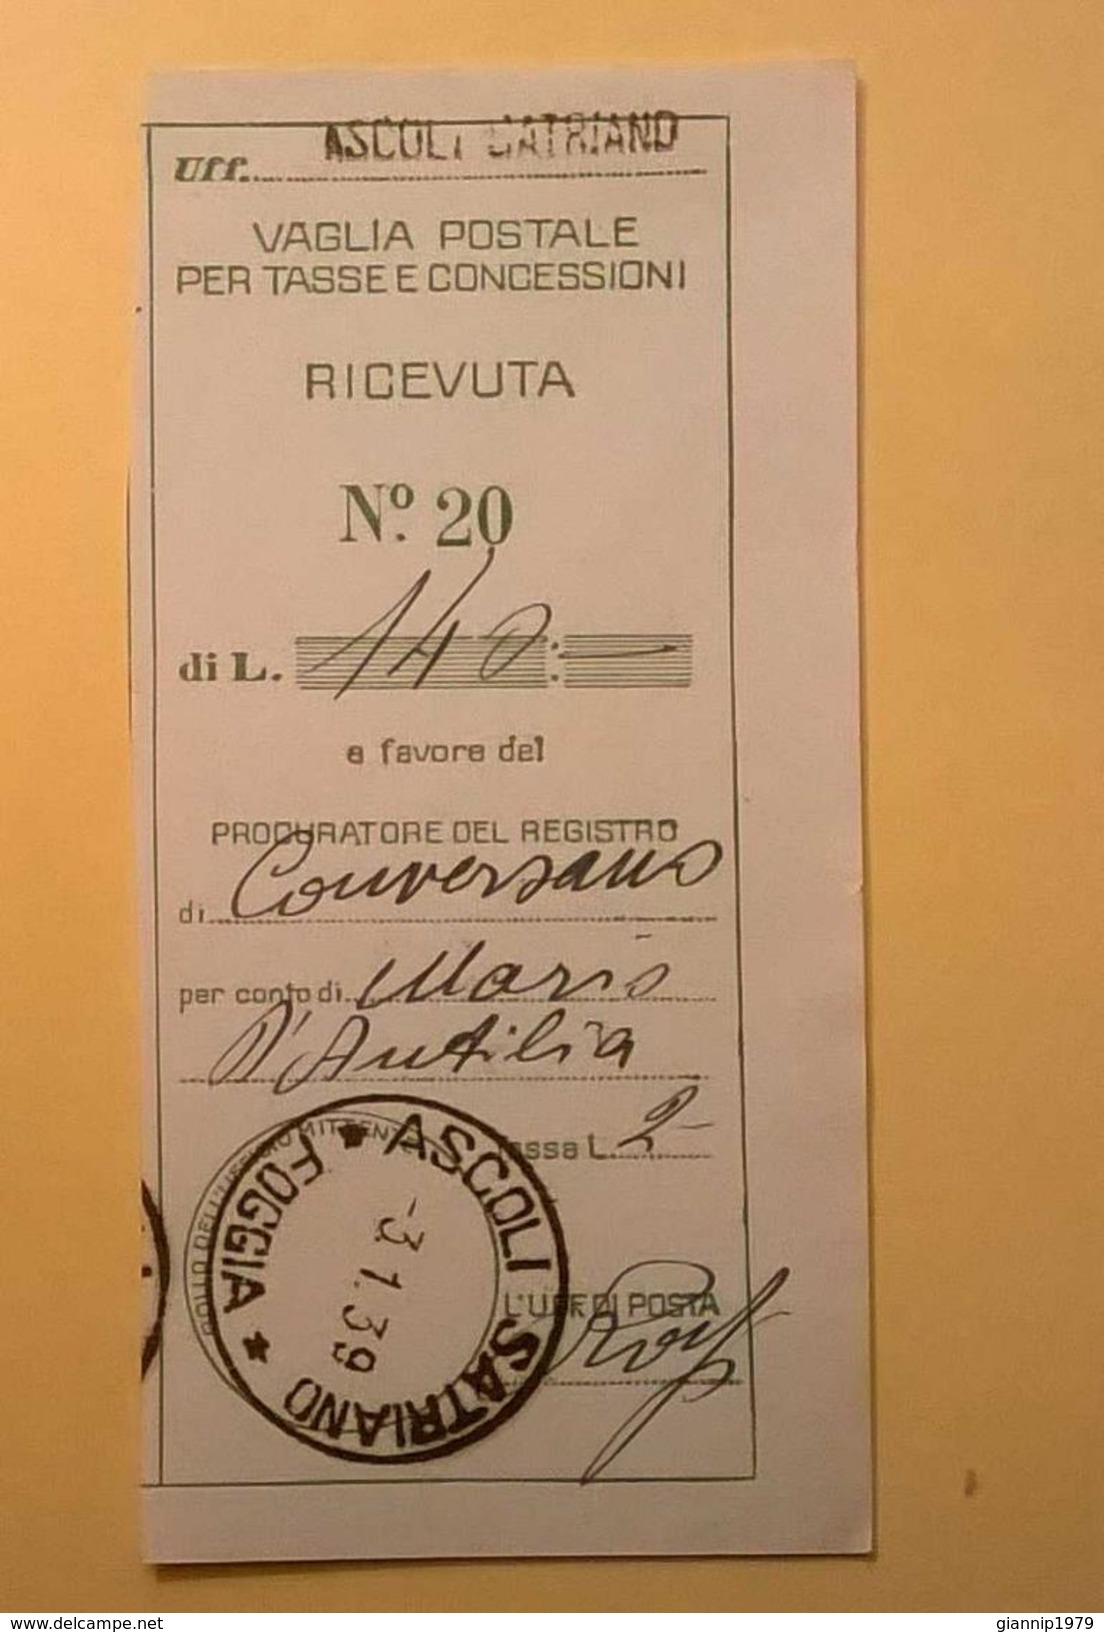 VAGLIA POSTALE RICEVUTA ASCOLI SATRIANO FOGGIA 1939 - Taxe Pour Mandats